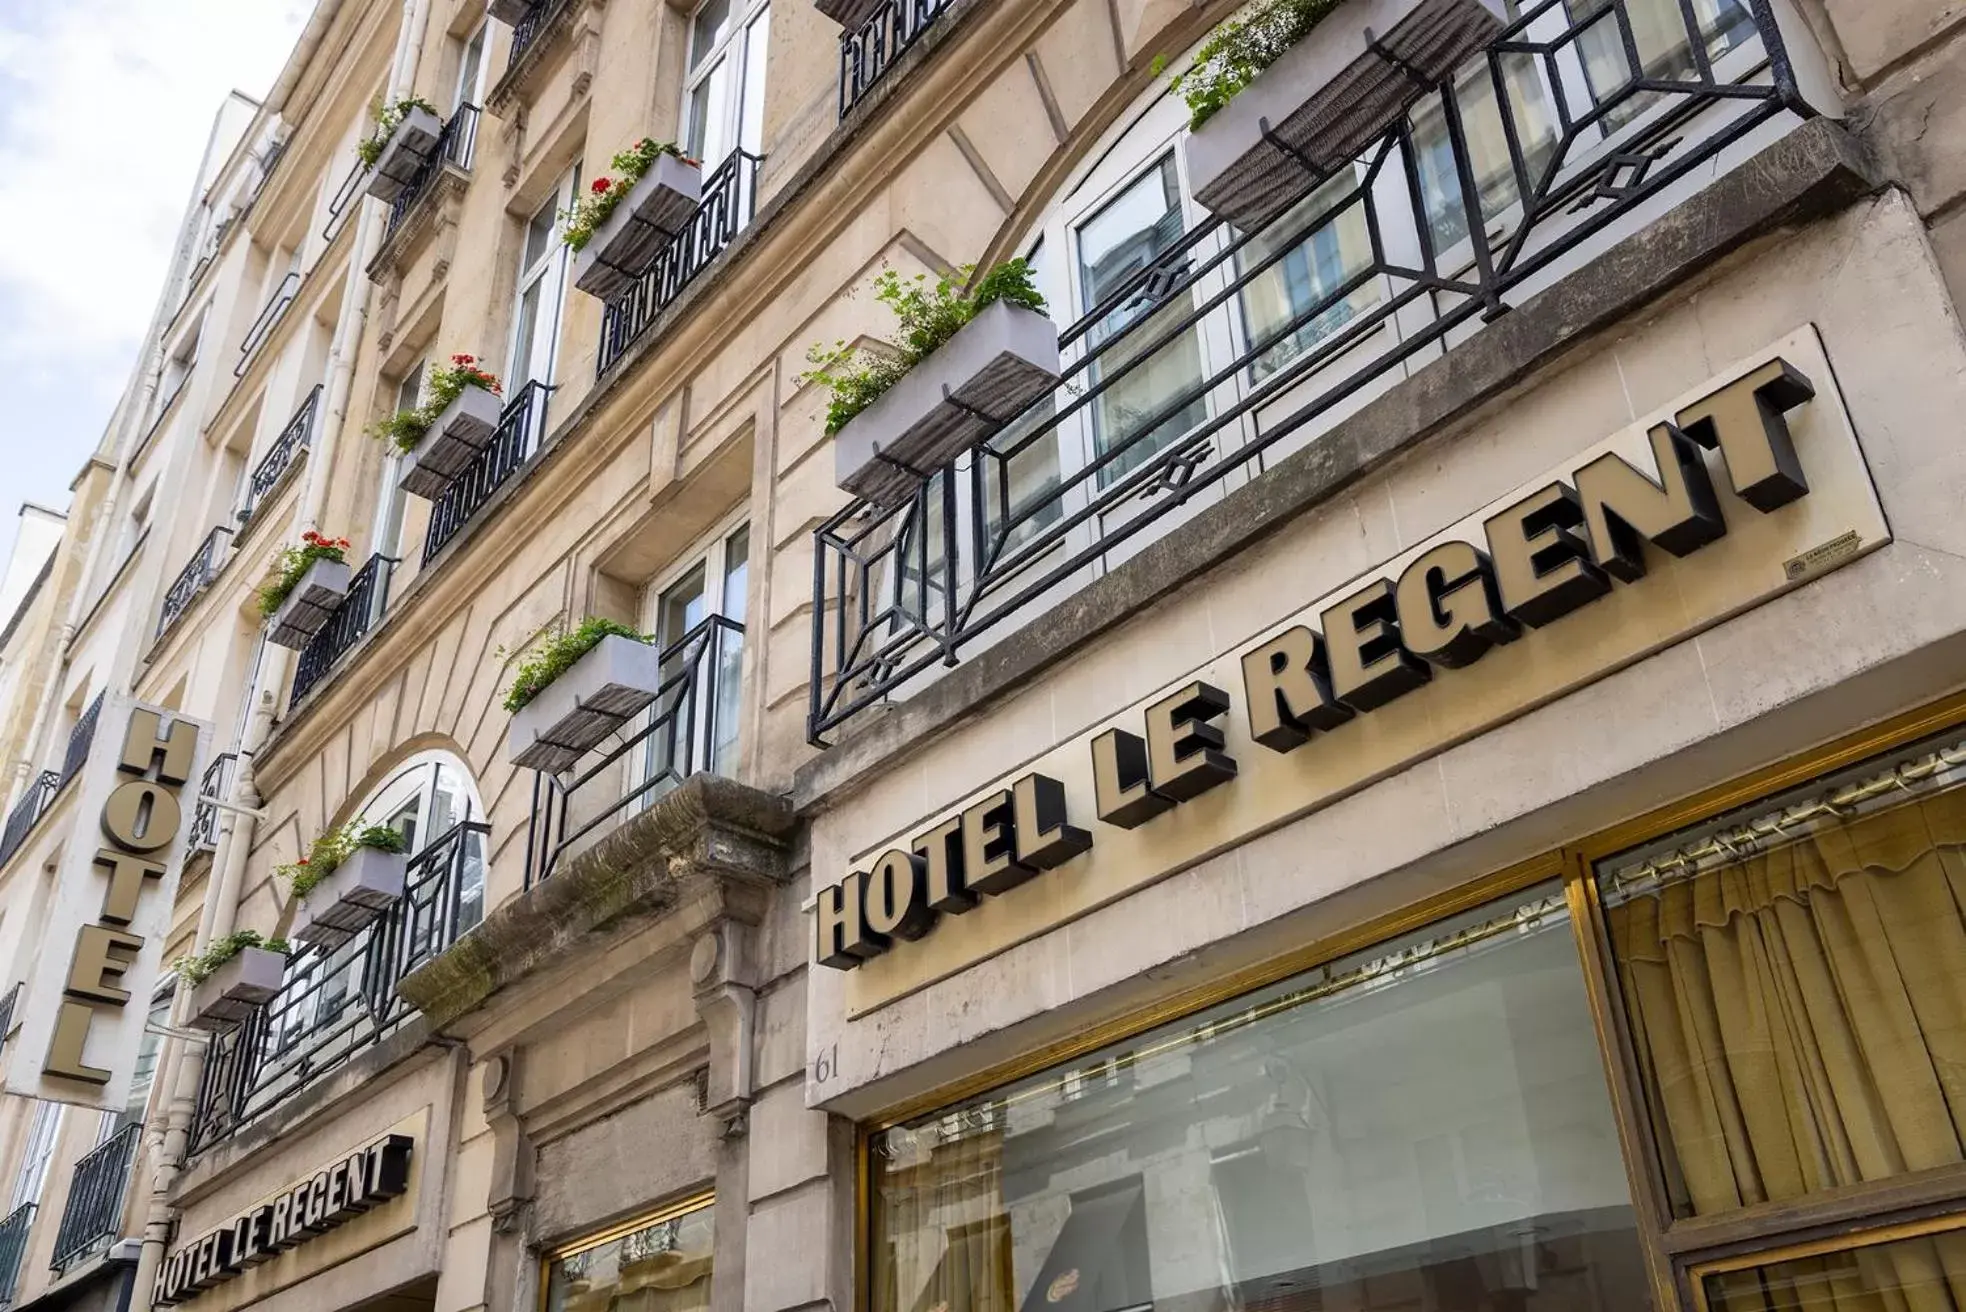 Property building in Hôtel Le Regent Paris